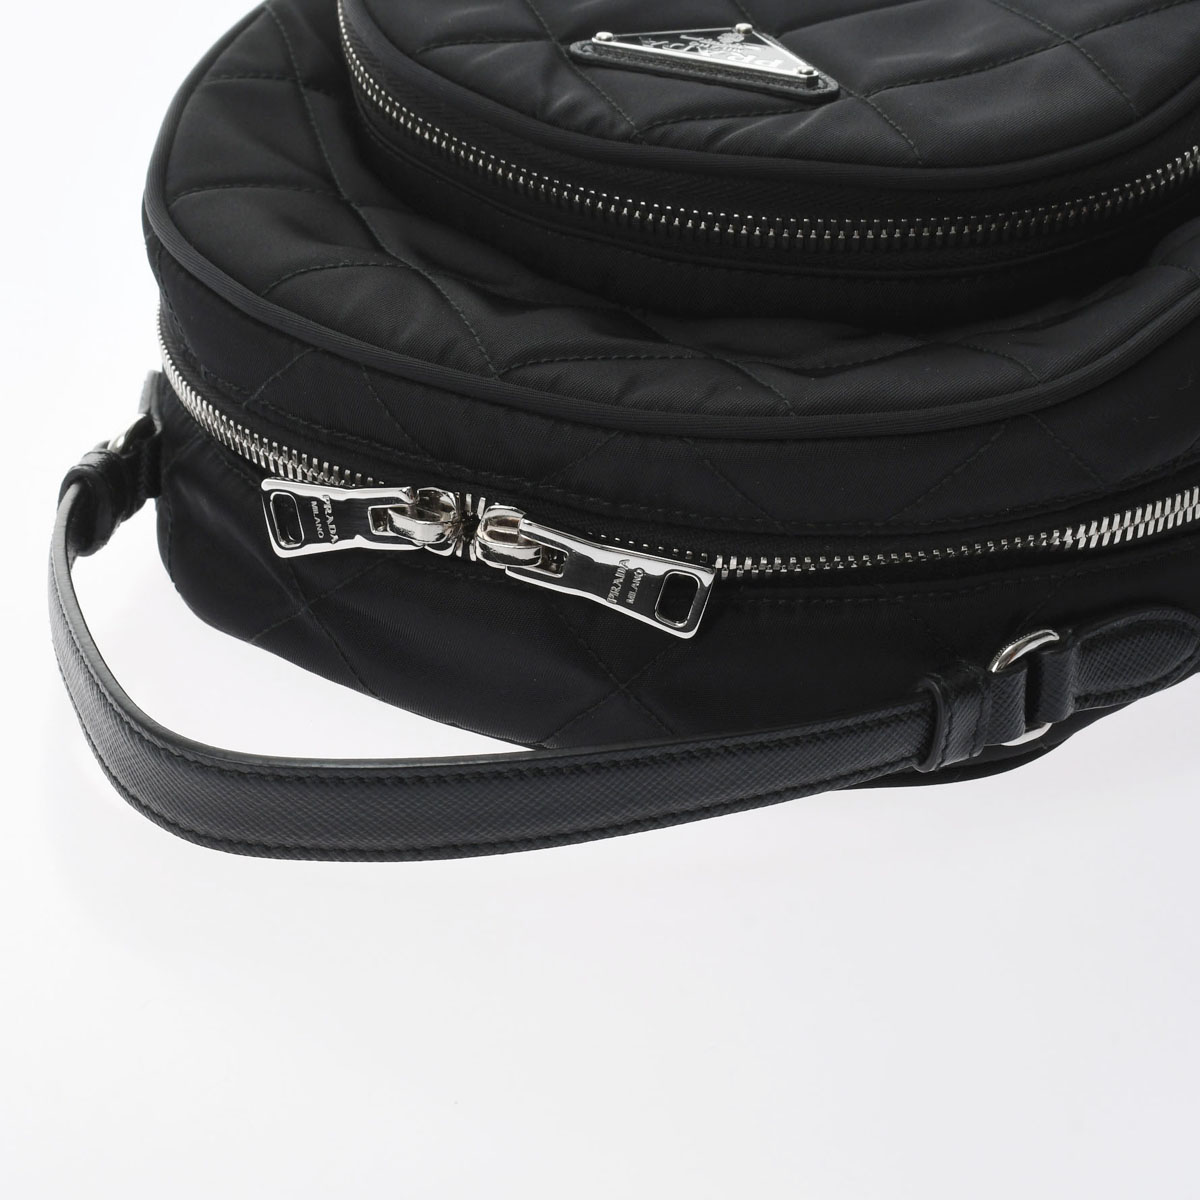 プラダ / PRADA バックパック アウトレット品 ブラック 1BZ066 ナイロン レディース バッグ 【未使用】【bag】